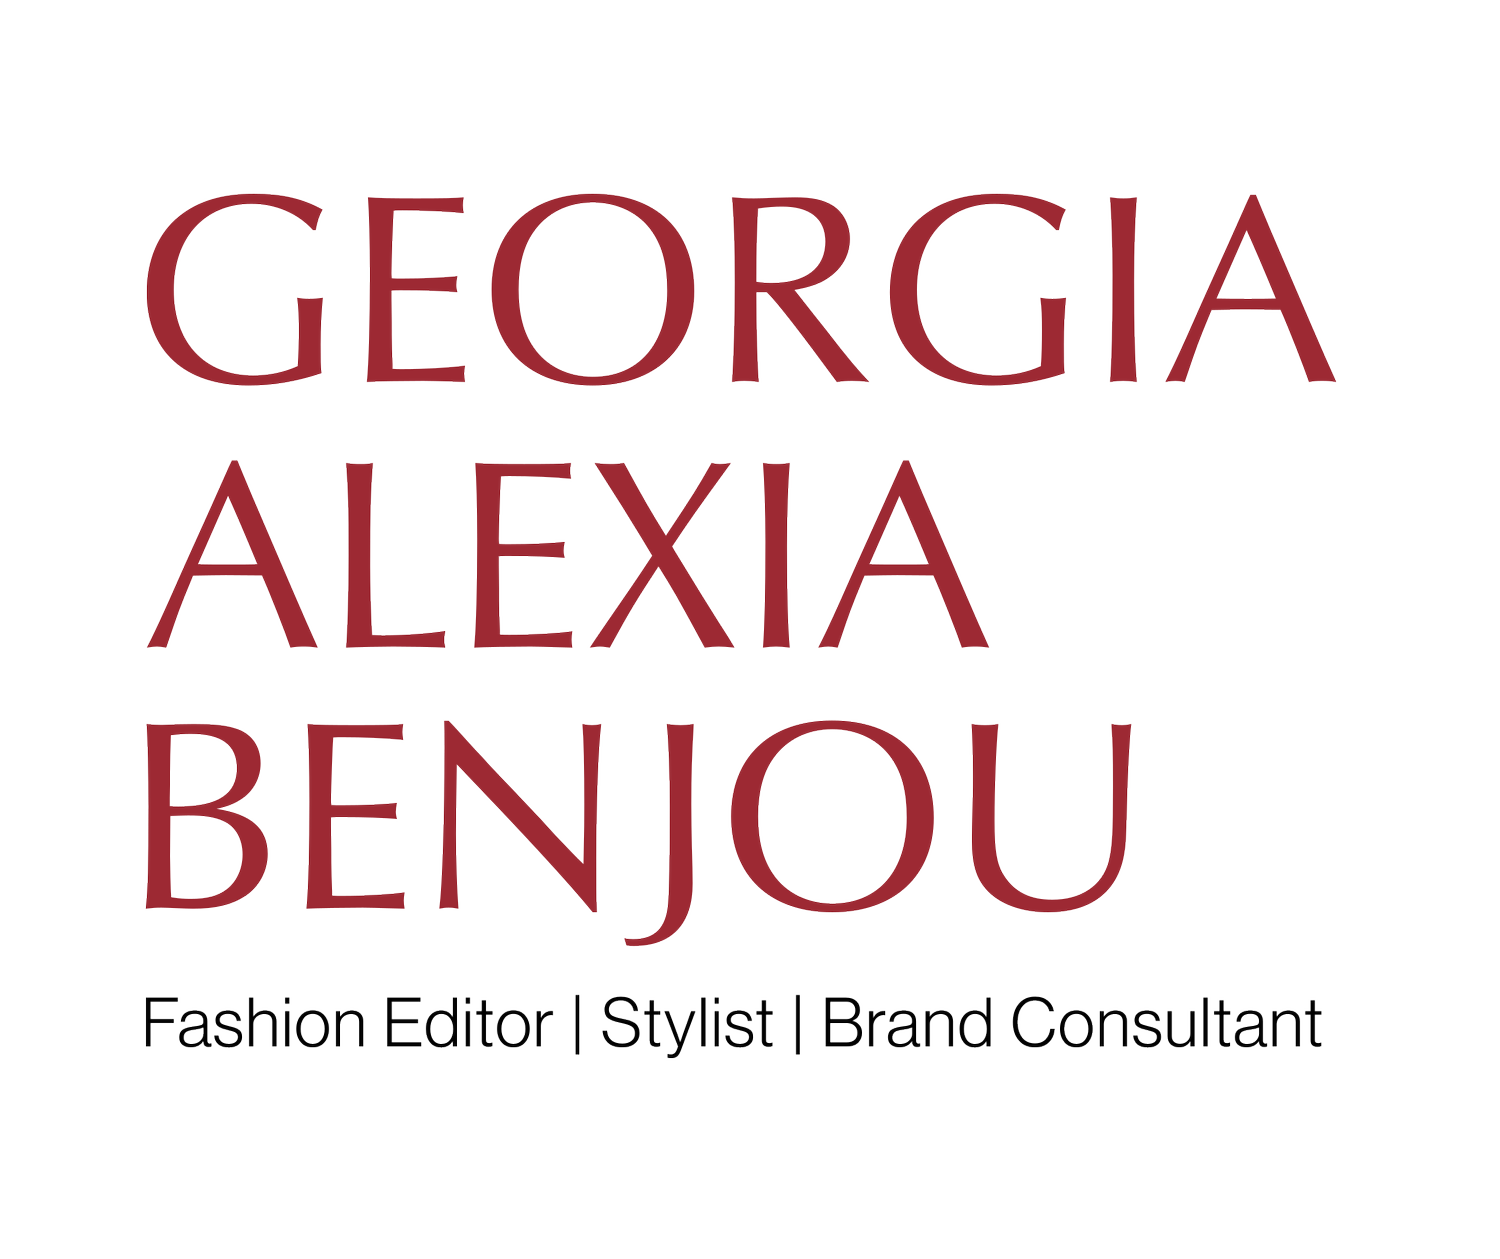 Georgia Alexia Benjou